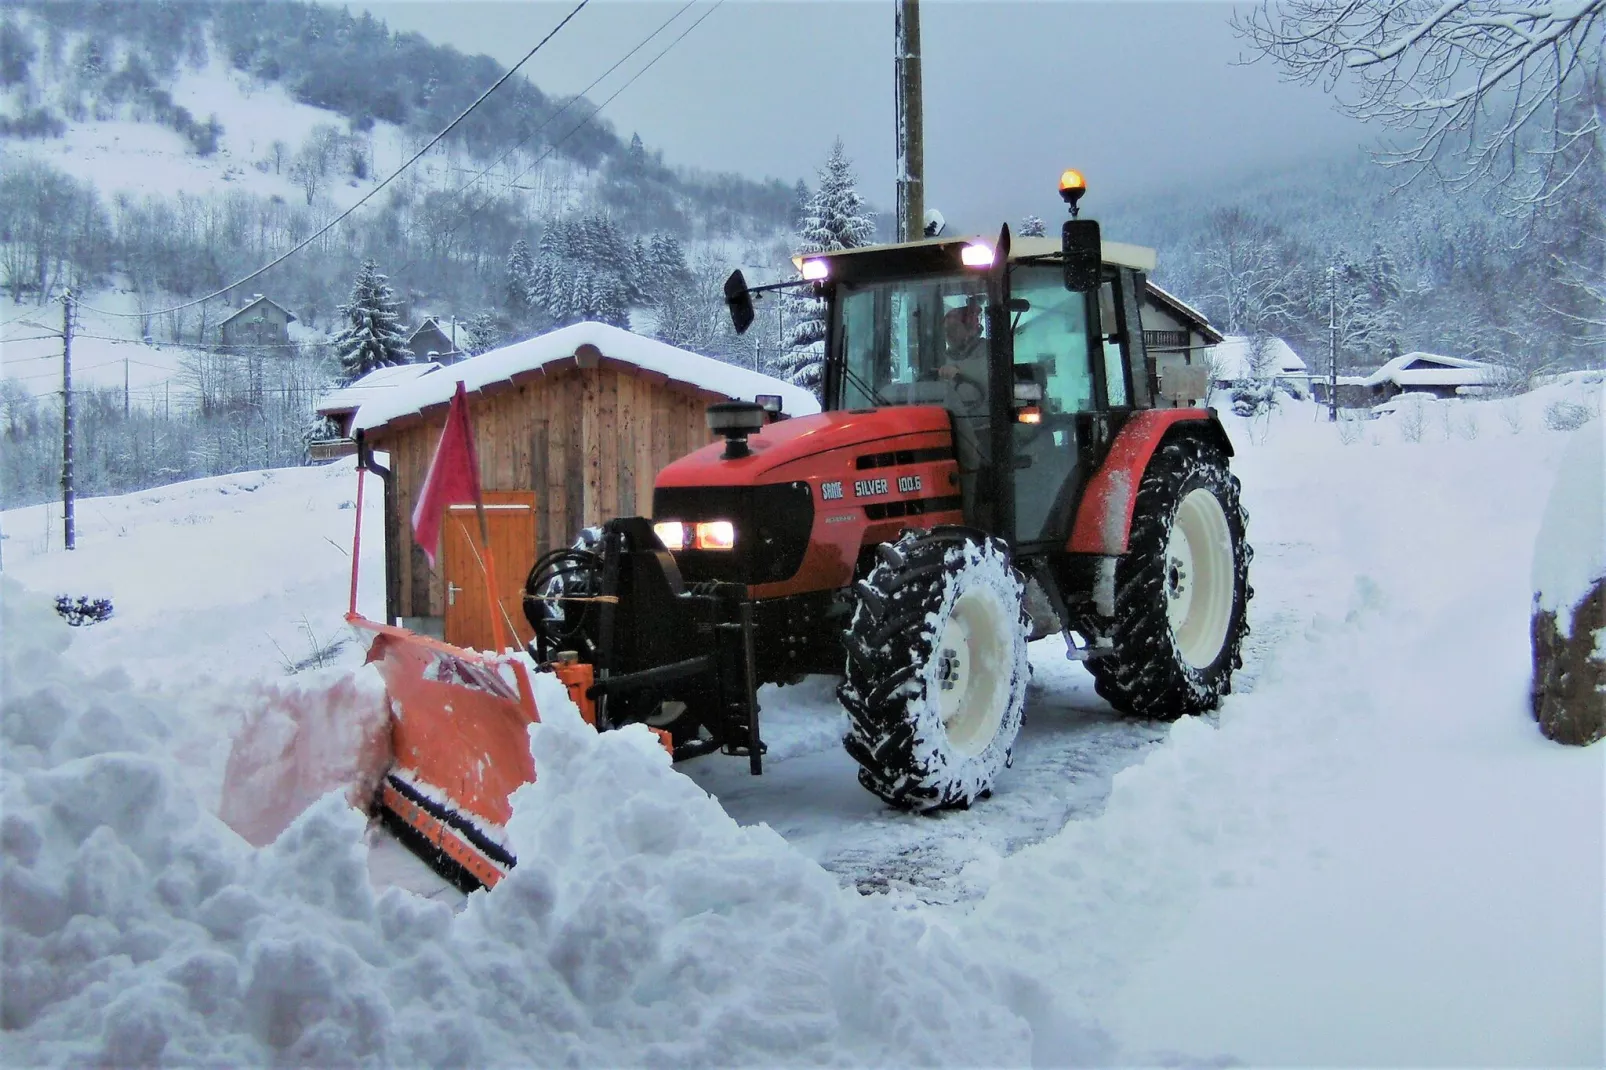 Chalet de montagne-Tuin winter